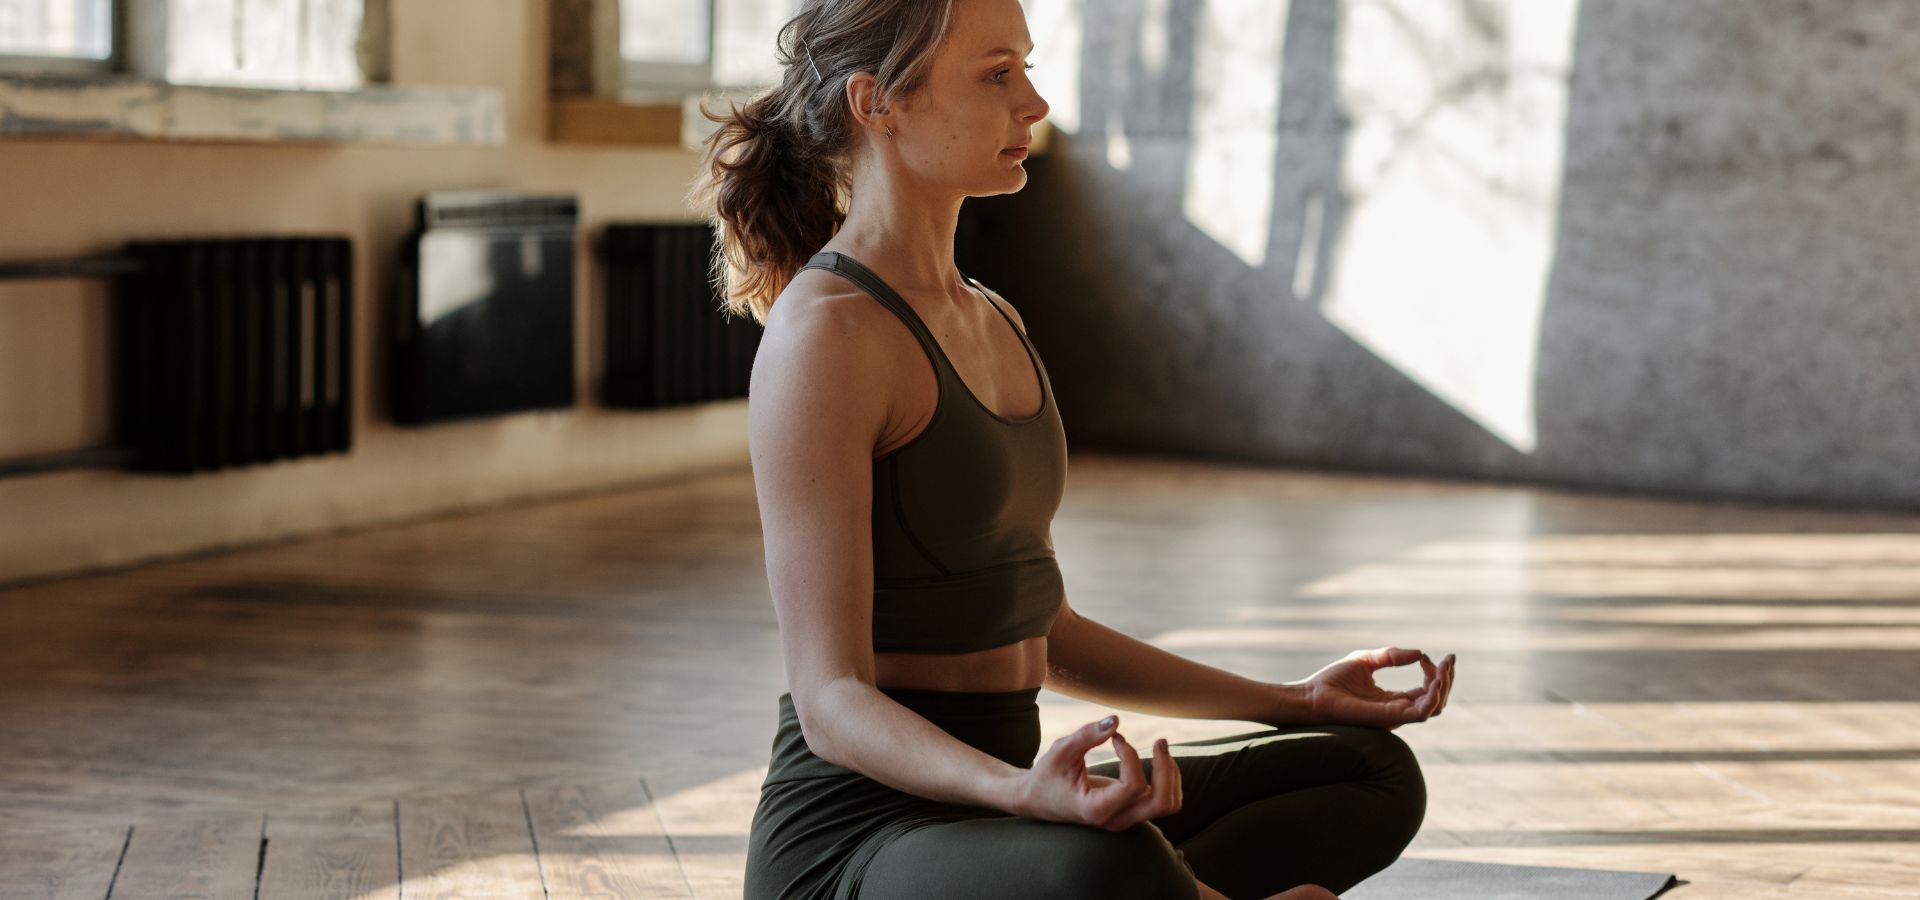 Conheça mais sobre Yoga para iniciantes e comece a praticar - Blog